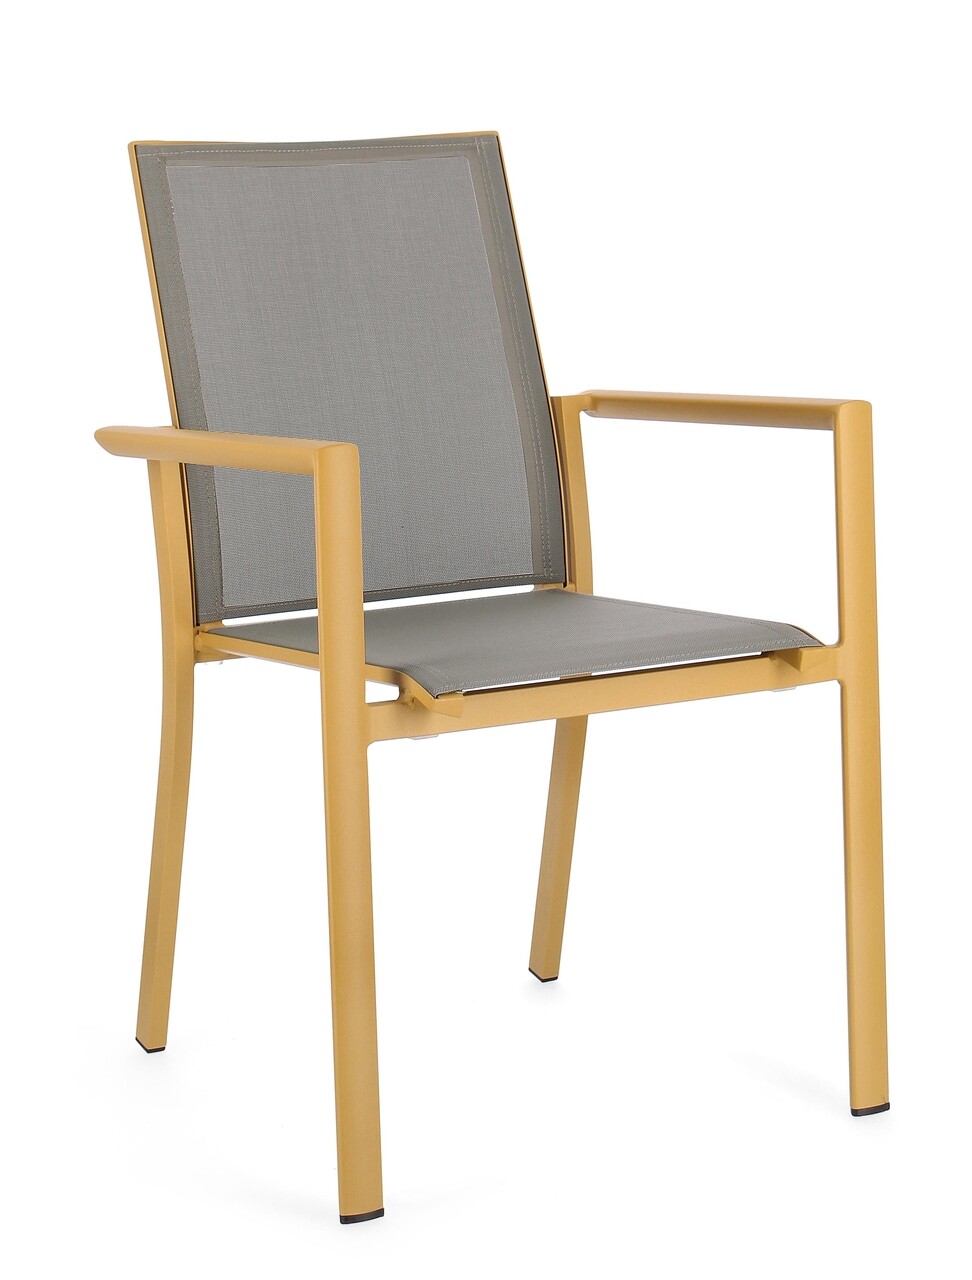 Konnor Kerti szék, Bizzotto, 56.2 x 60 x 88 cm, alumínium/textilén, mustársárga